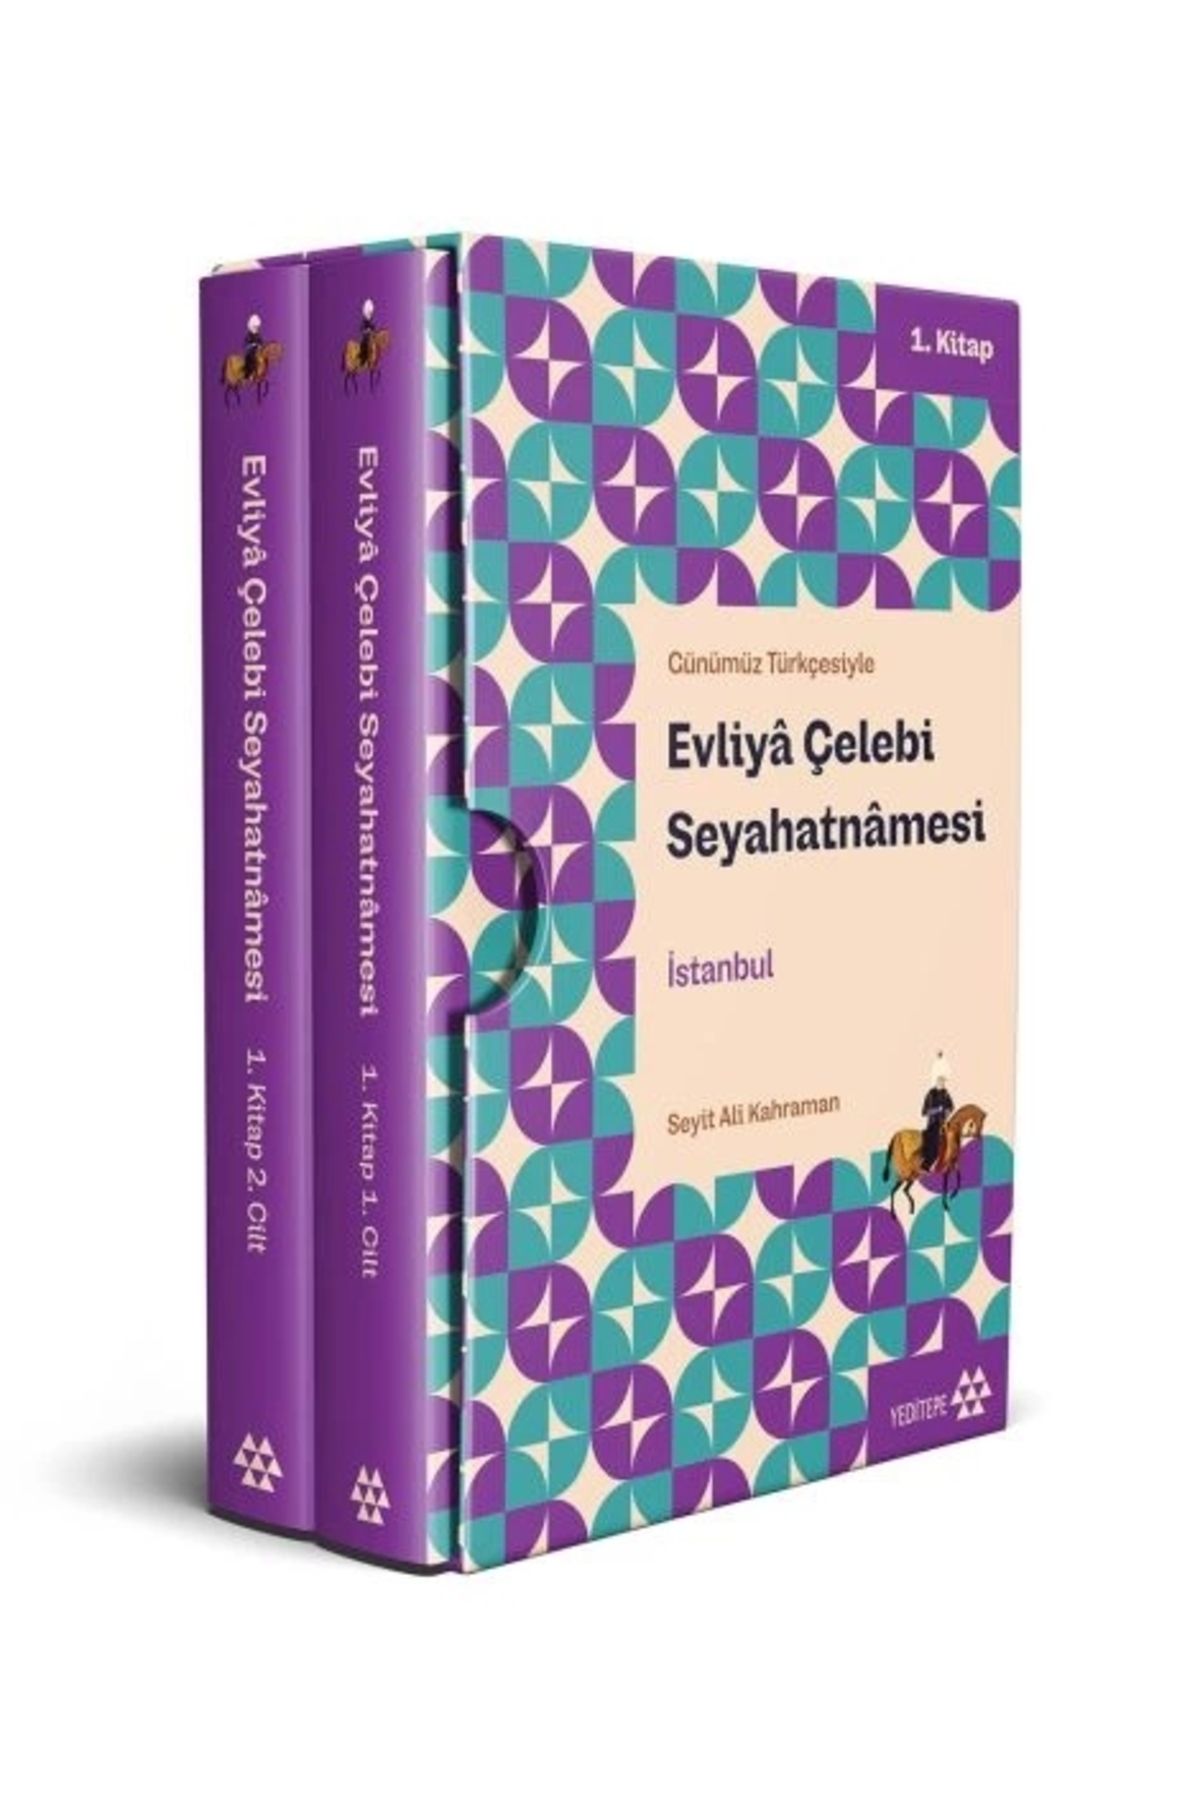 Yeditepe Yayınevi Evliyâ Çelebi Seyahatnâmesi Istanbul 1. Kitap (2 CİLT KUTULU)